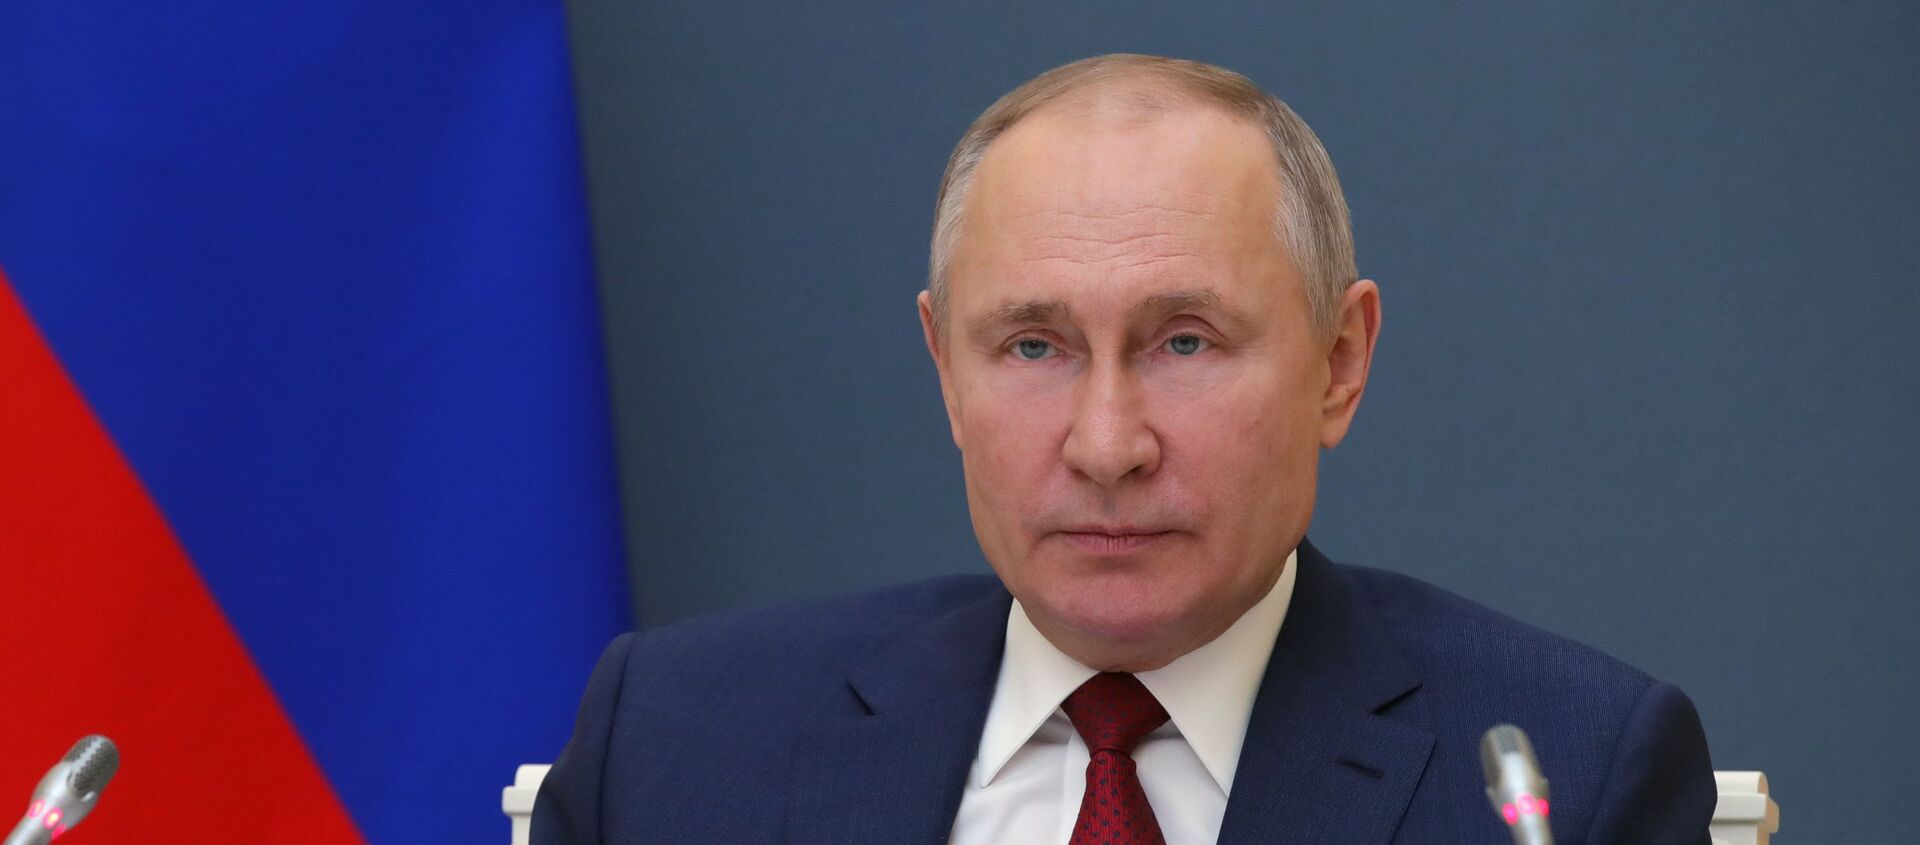 Президент РФ В. Путин выступил на сессии онлайн-форума Давосская повестка дня 2021 - Sputnik Արմենիա, 1920, 27.01.2021